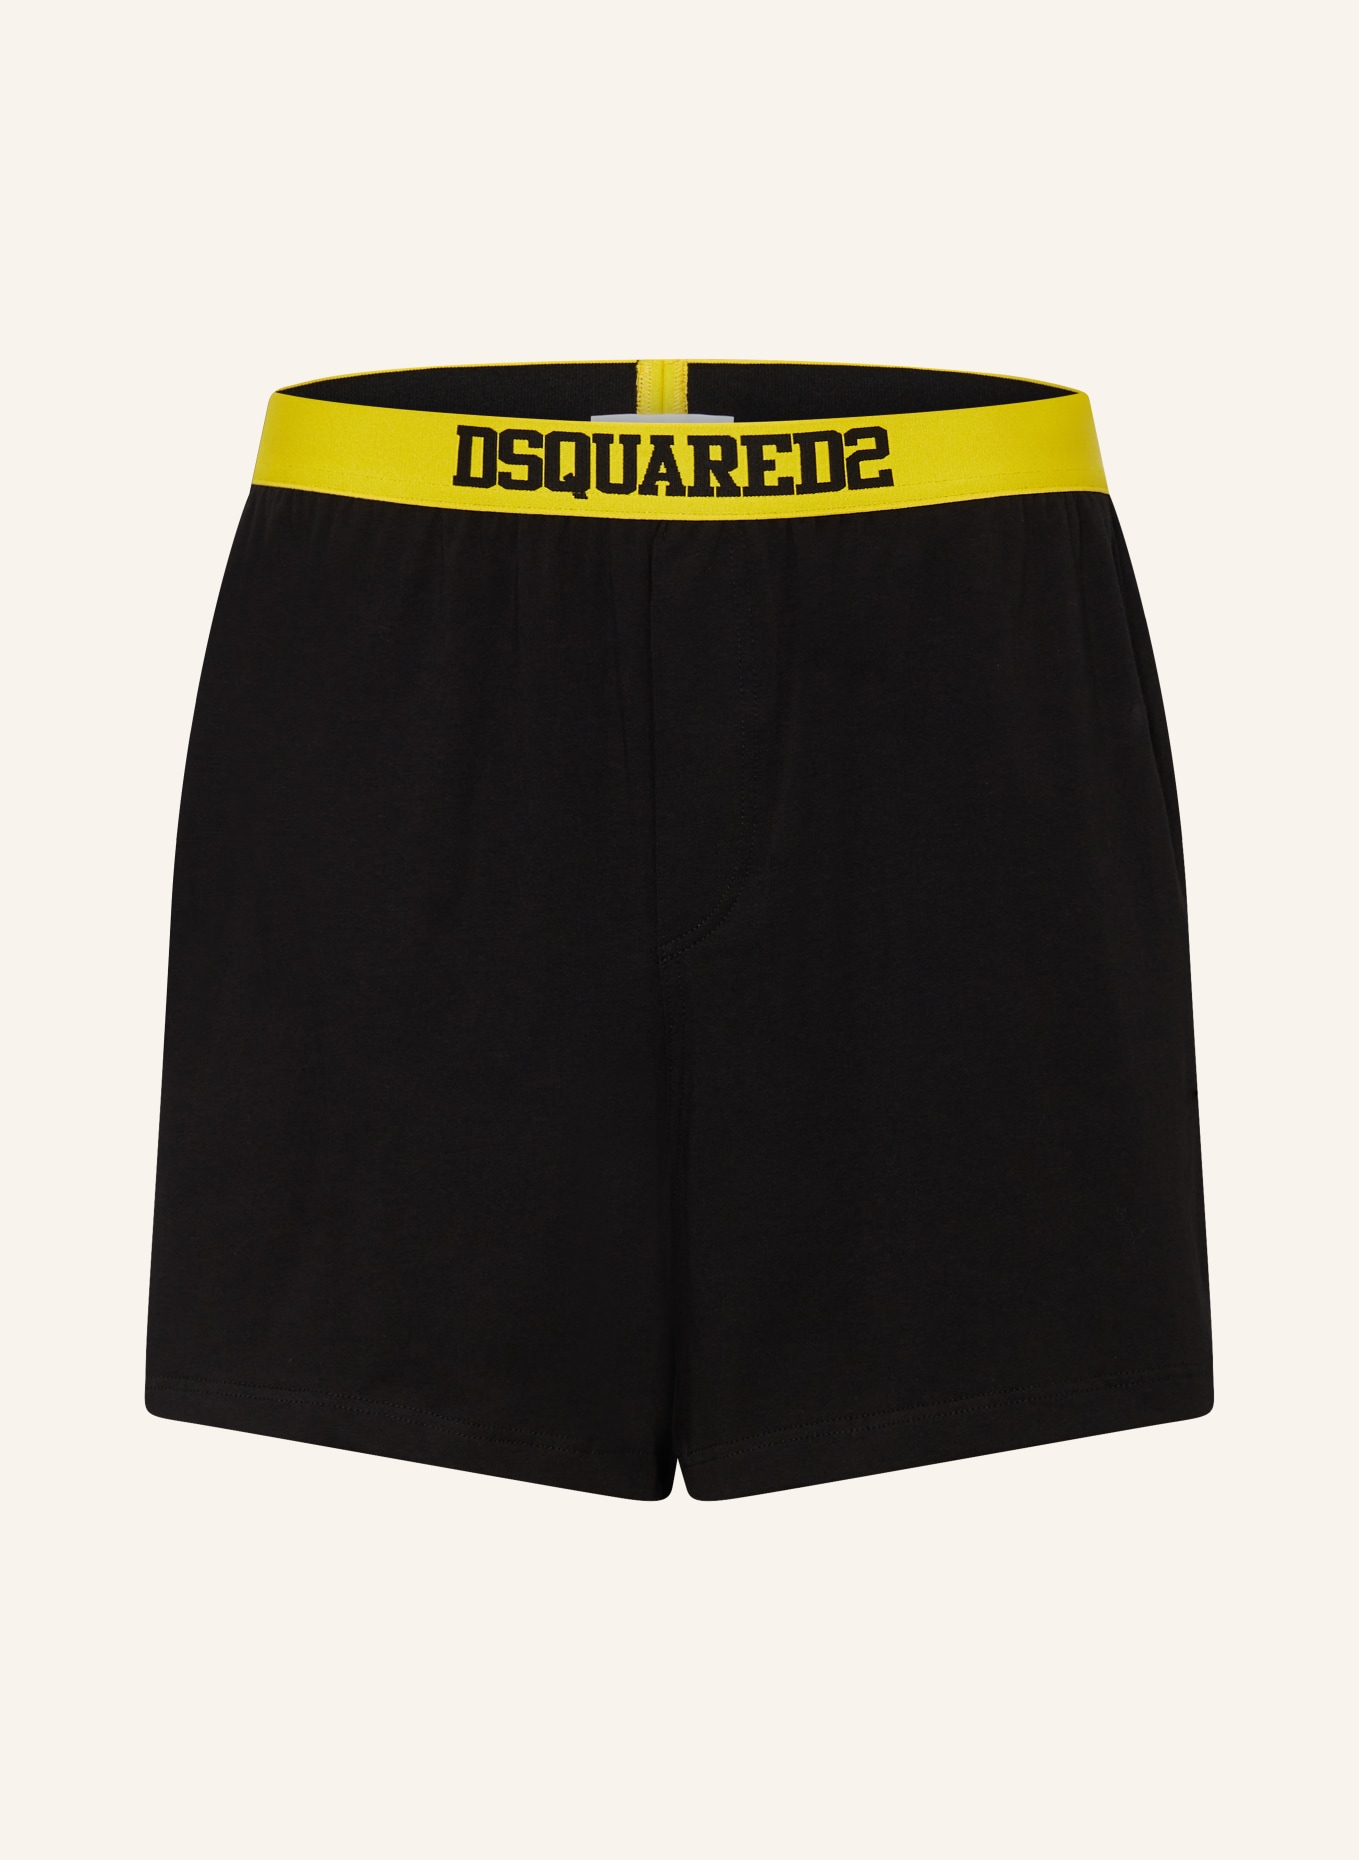 DSQUARED2 Boxer shorts, Color: BLACK (Image 1)